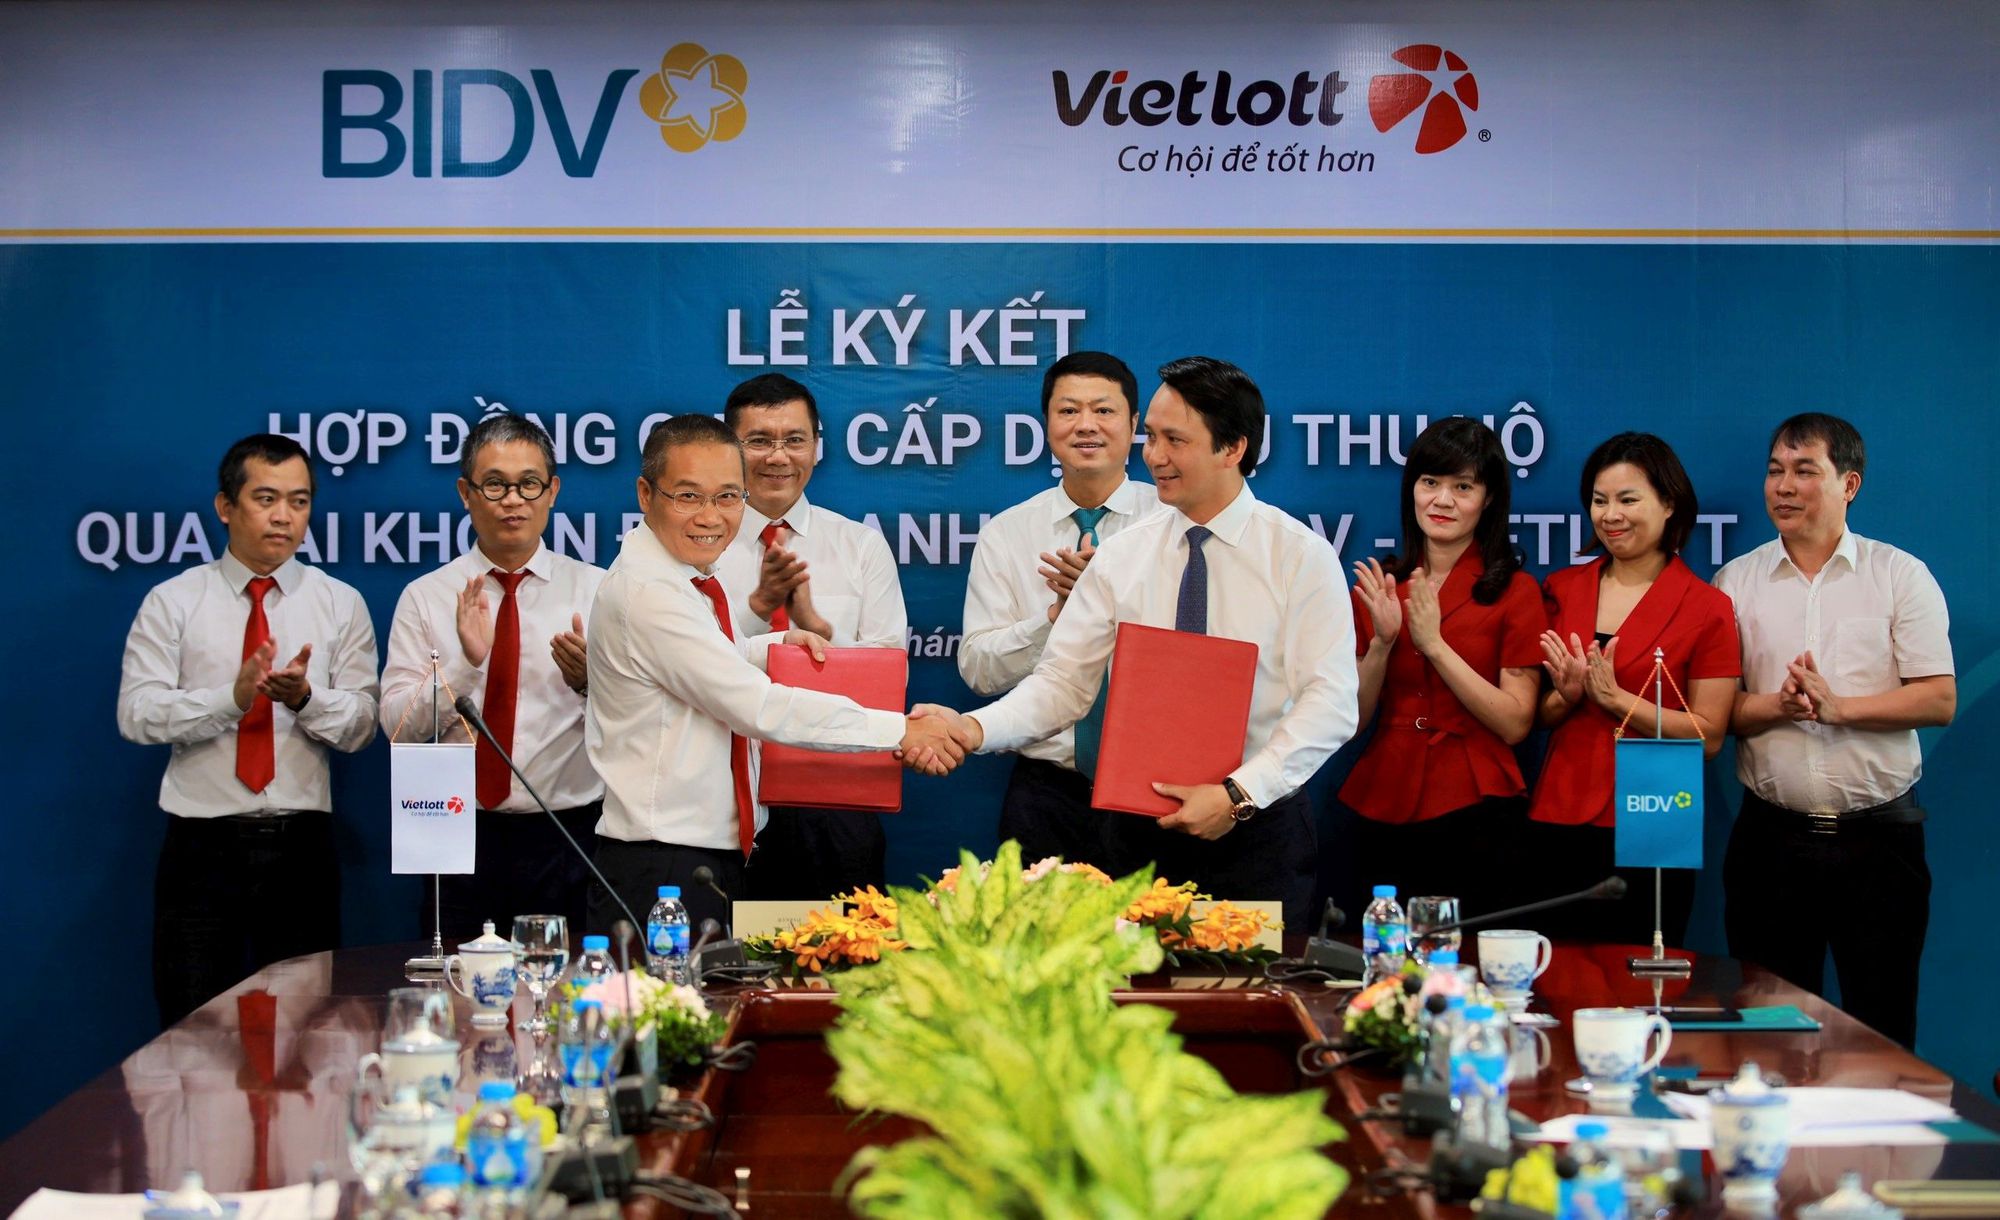 BIDV và Vietlott ký kết hợp đồng dịch vụ thu hộ qua tài khoản định danh - Ảnh 1.